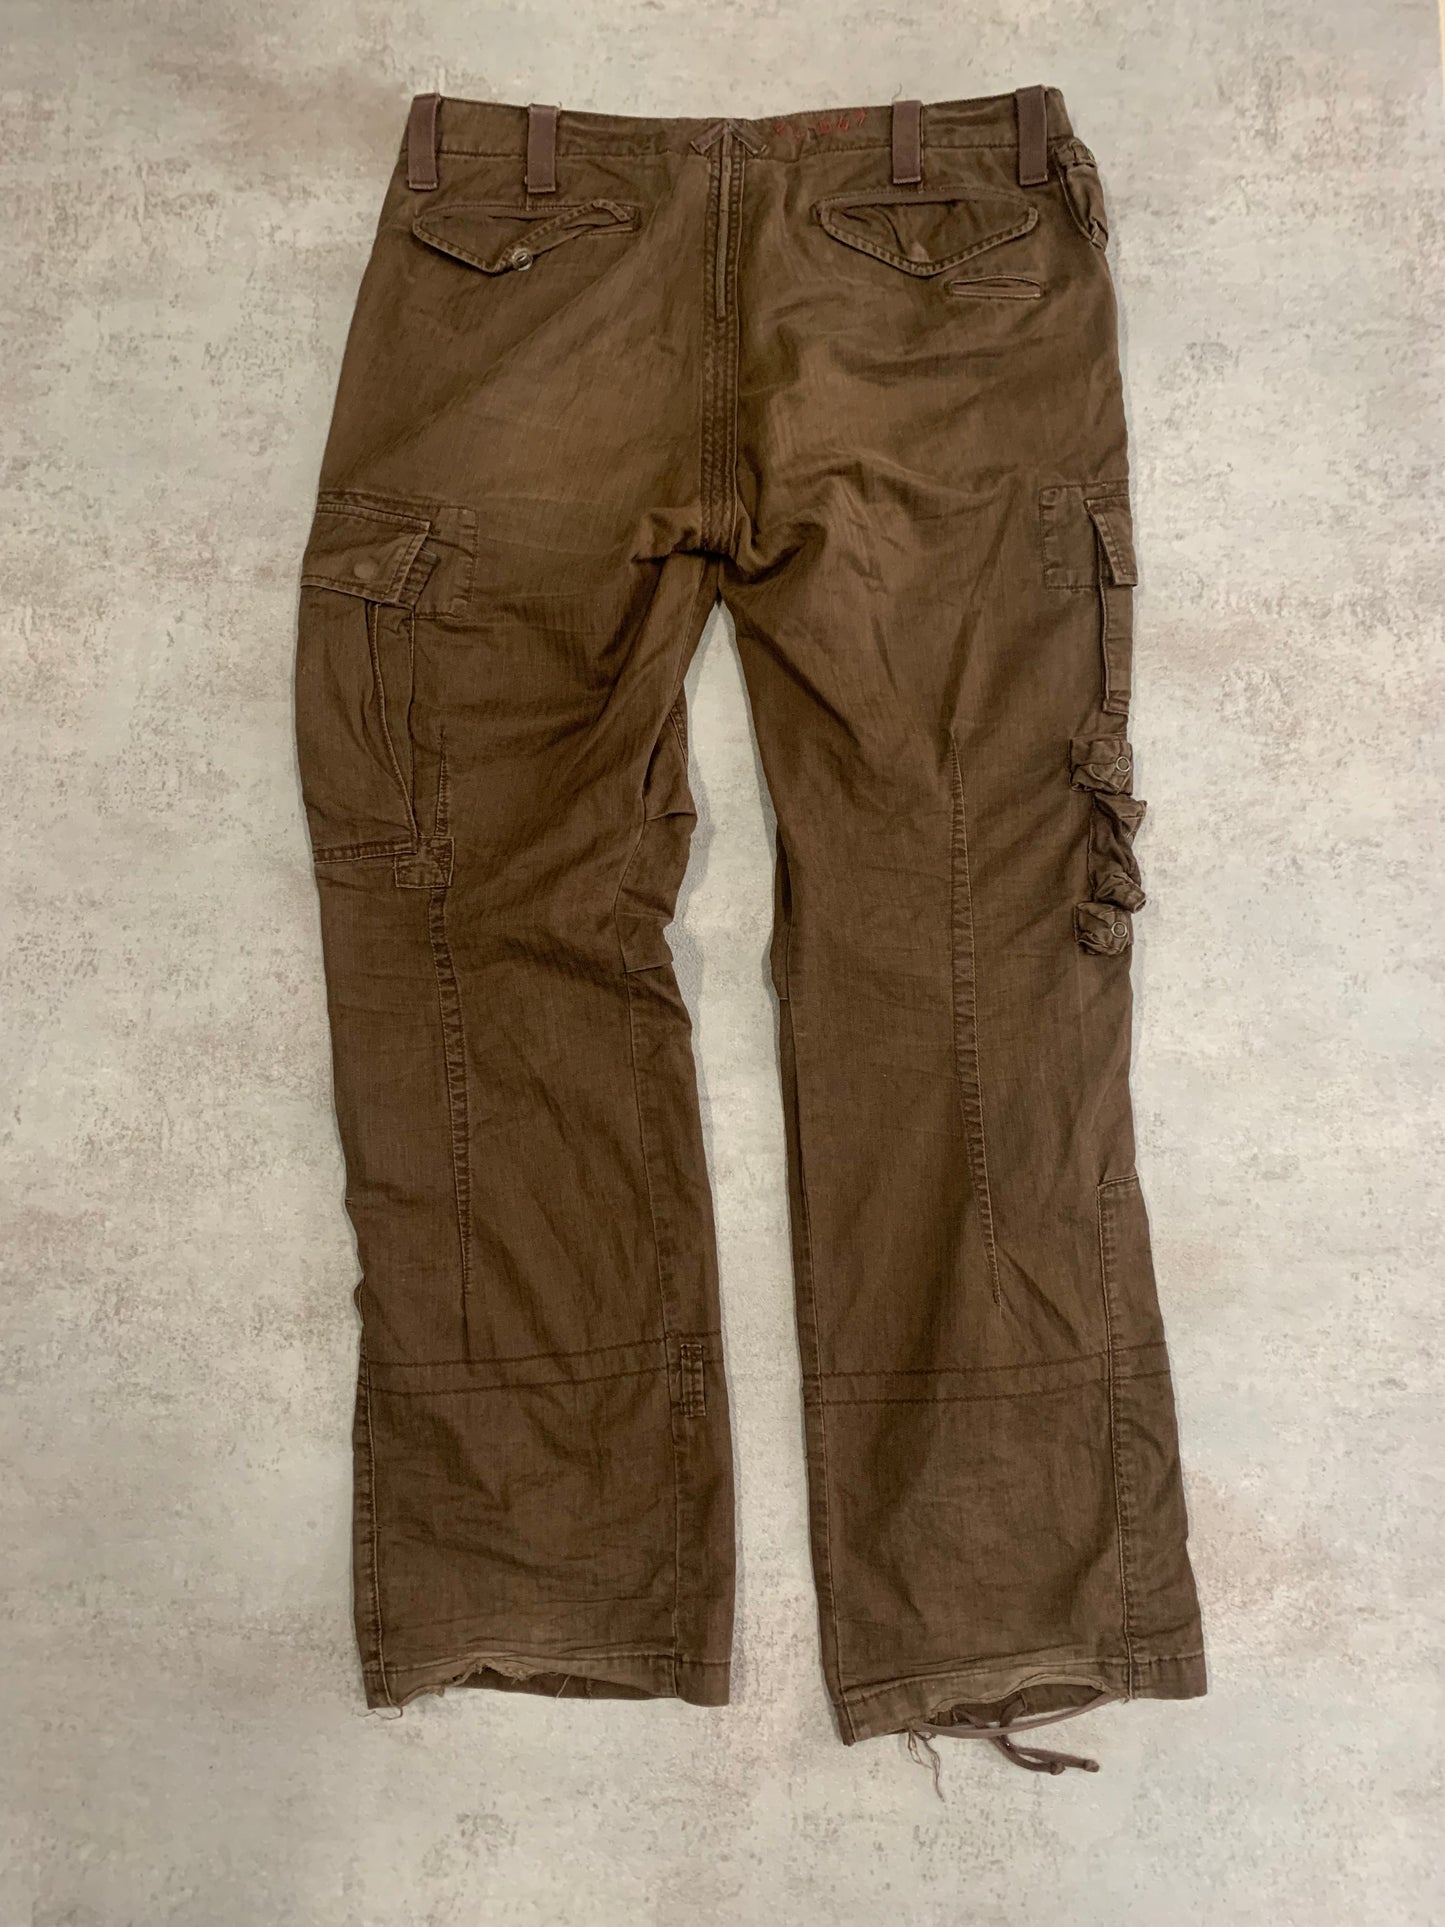 Vintage Polo Ralph Lauren 90's Cargo Pants - L